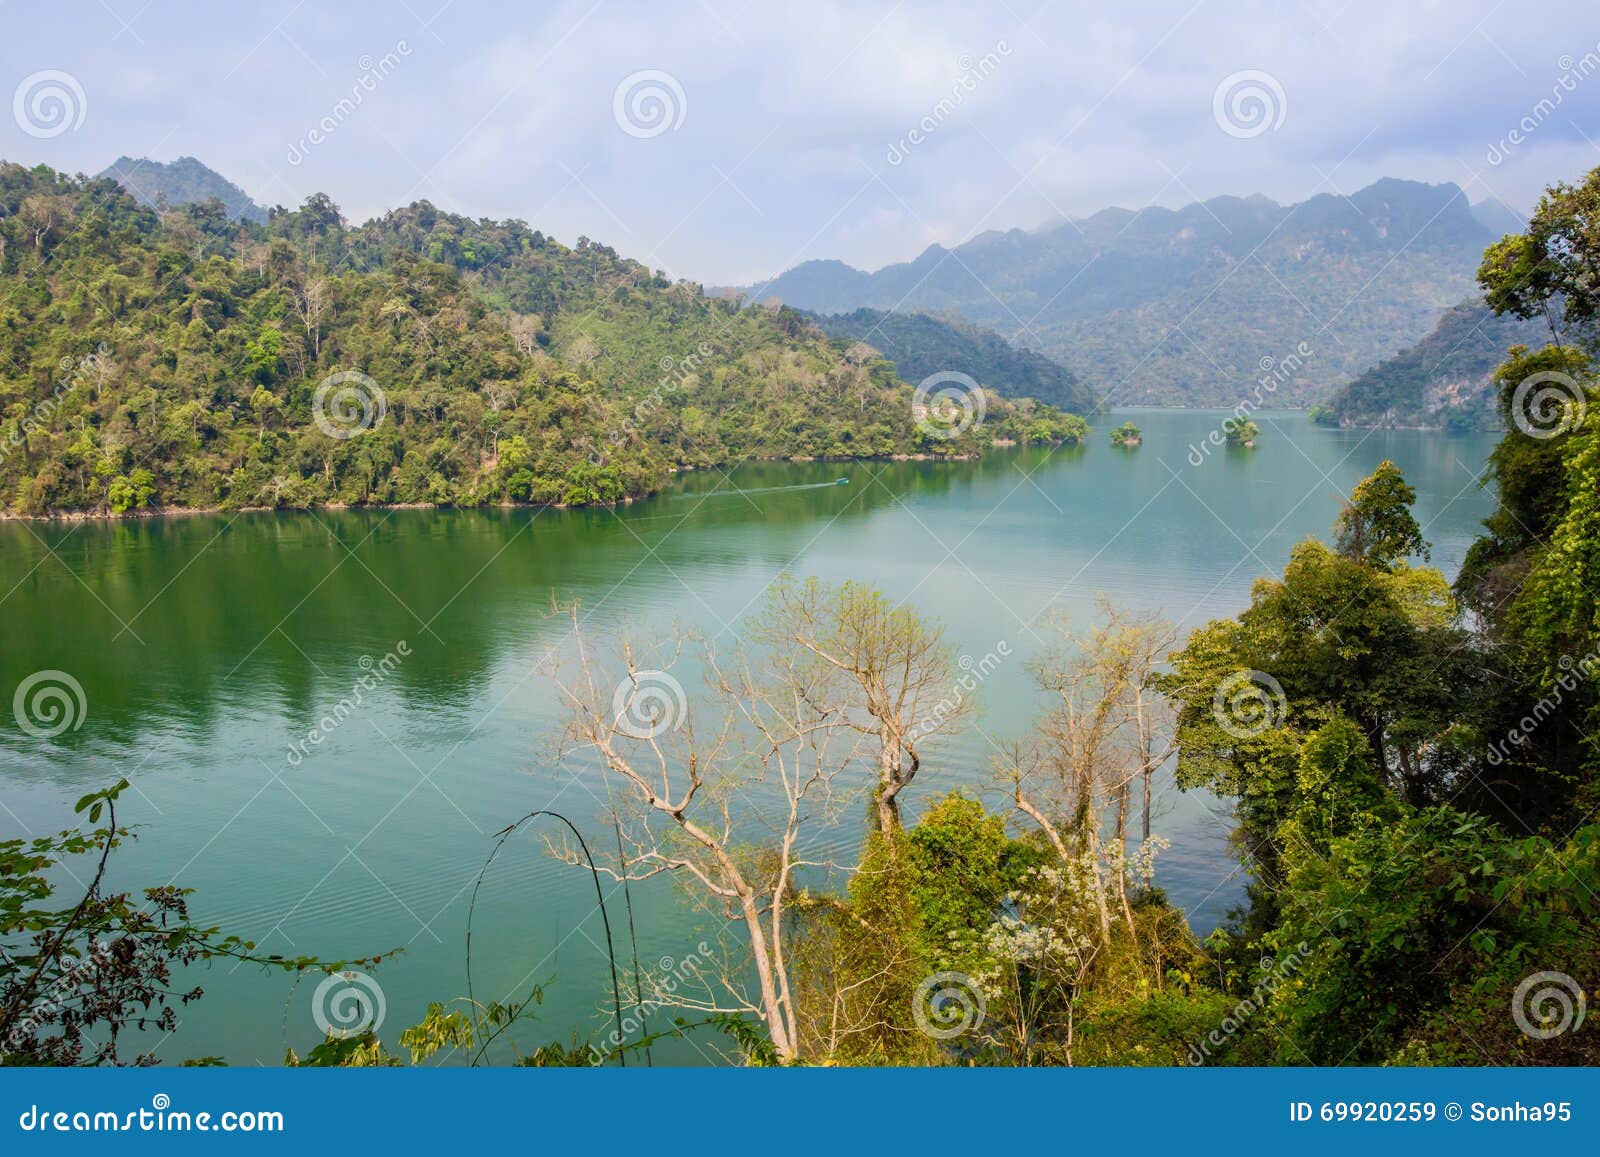 ba bÃ¡Â»Æ lake is the largest natural lake in vietnam